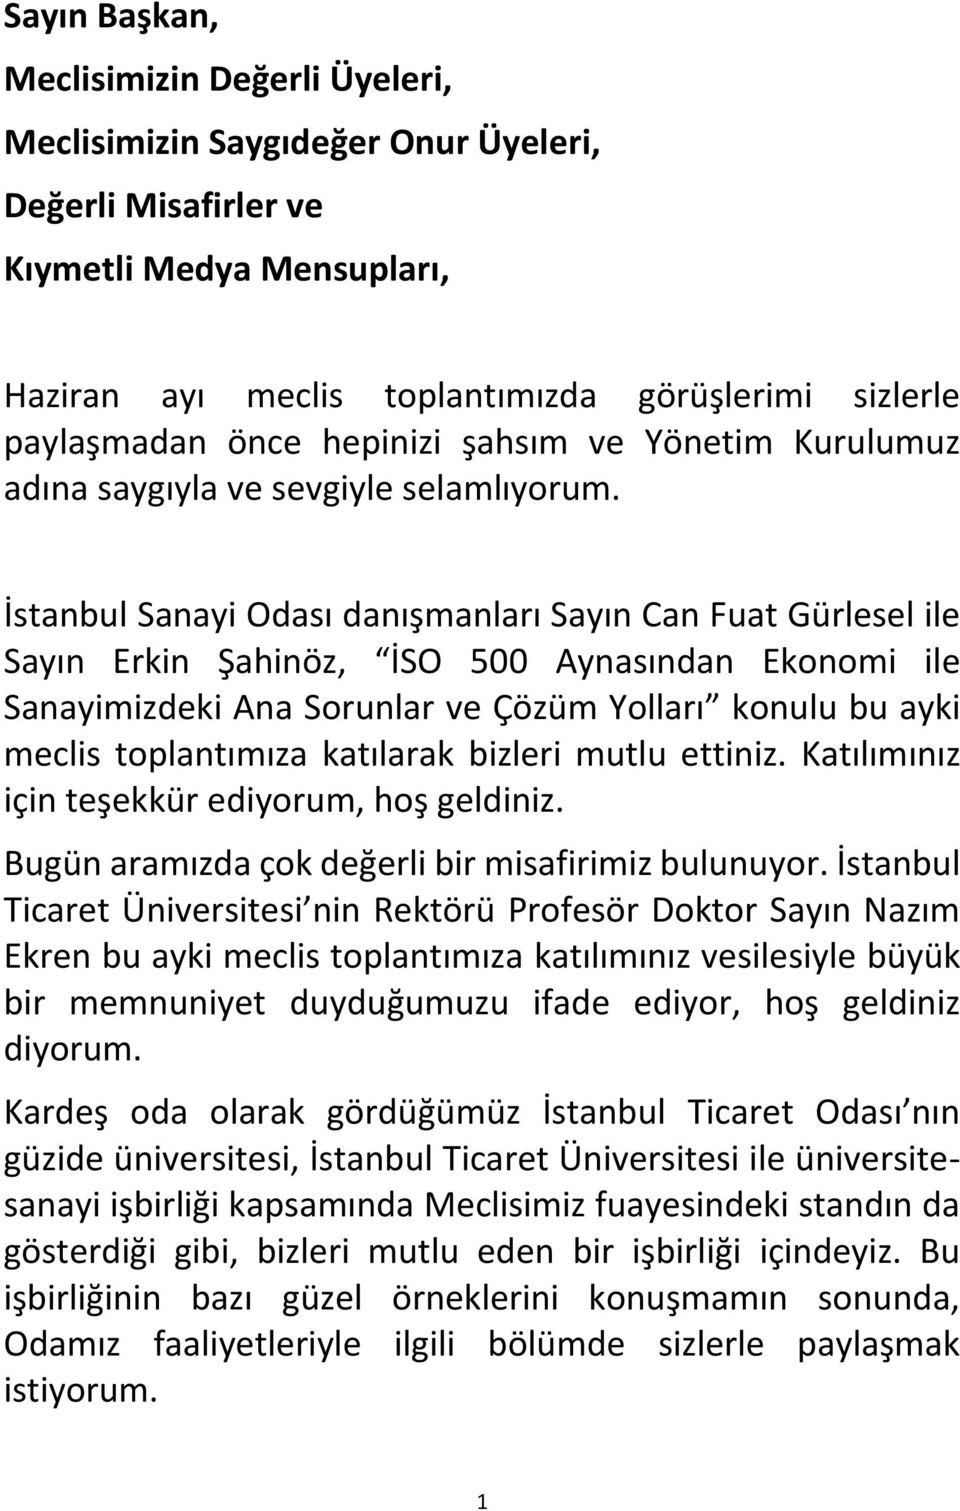 İstanbul Sanayi Odası danışmanları Sayın Can Fuat Gürlesel ile Sayın Erkin Şahinöz, İSO 500 Aynasından Ekonomi ile Sanayimizdeki Ana Sorunlar ve Çözüm Yolları konulu bu ayki meclis toplantımıza